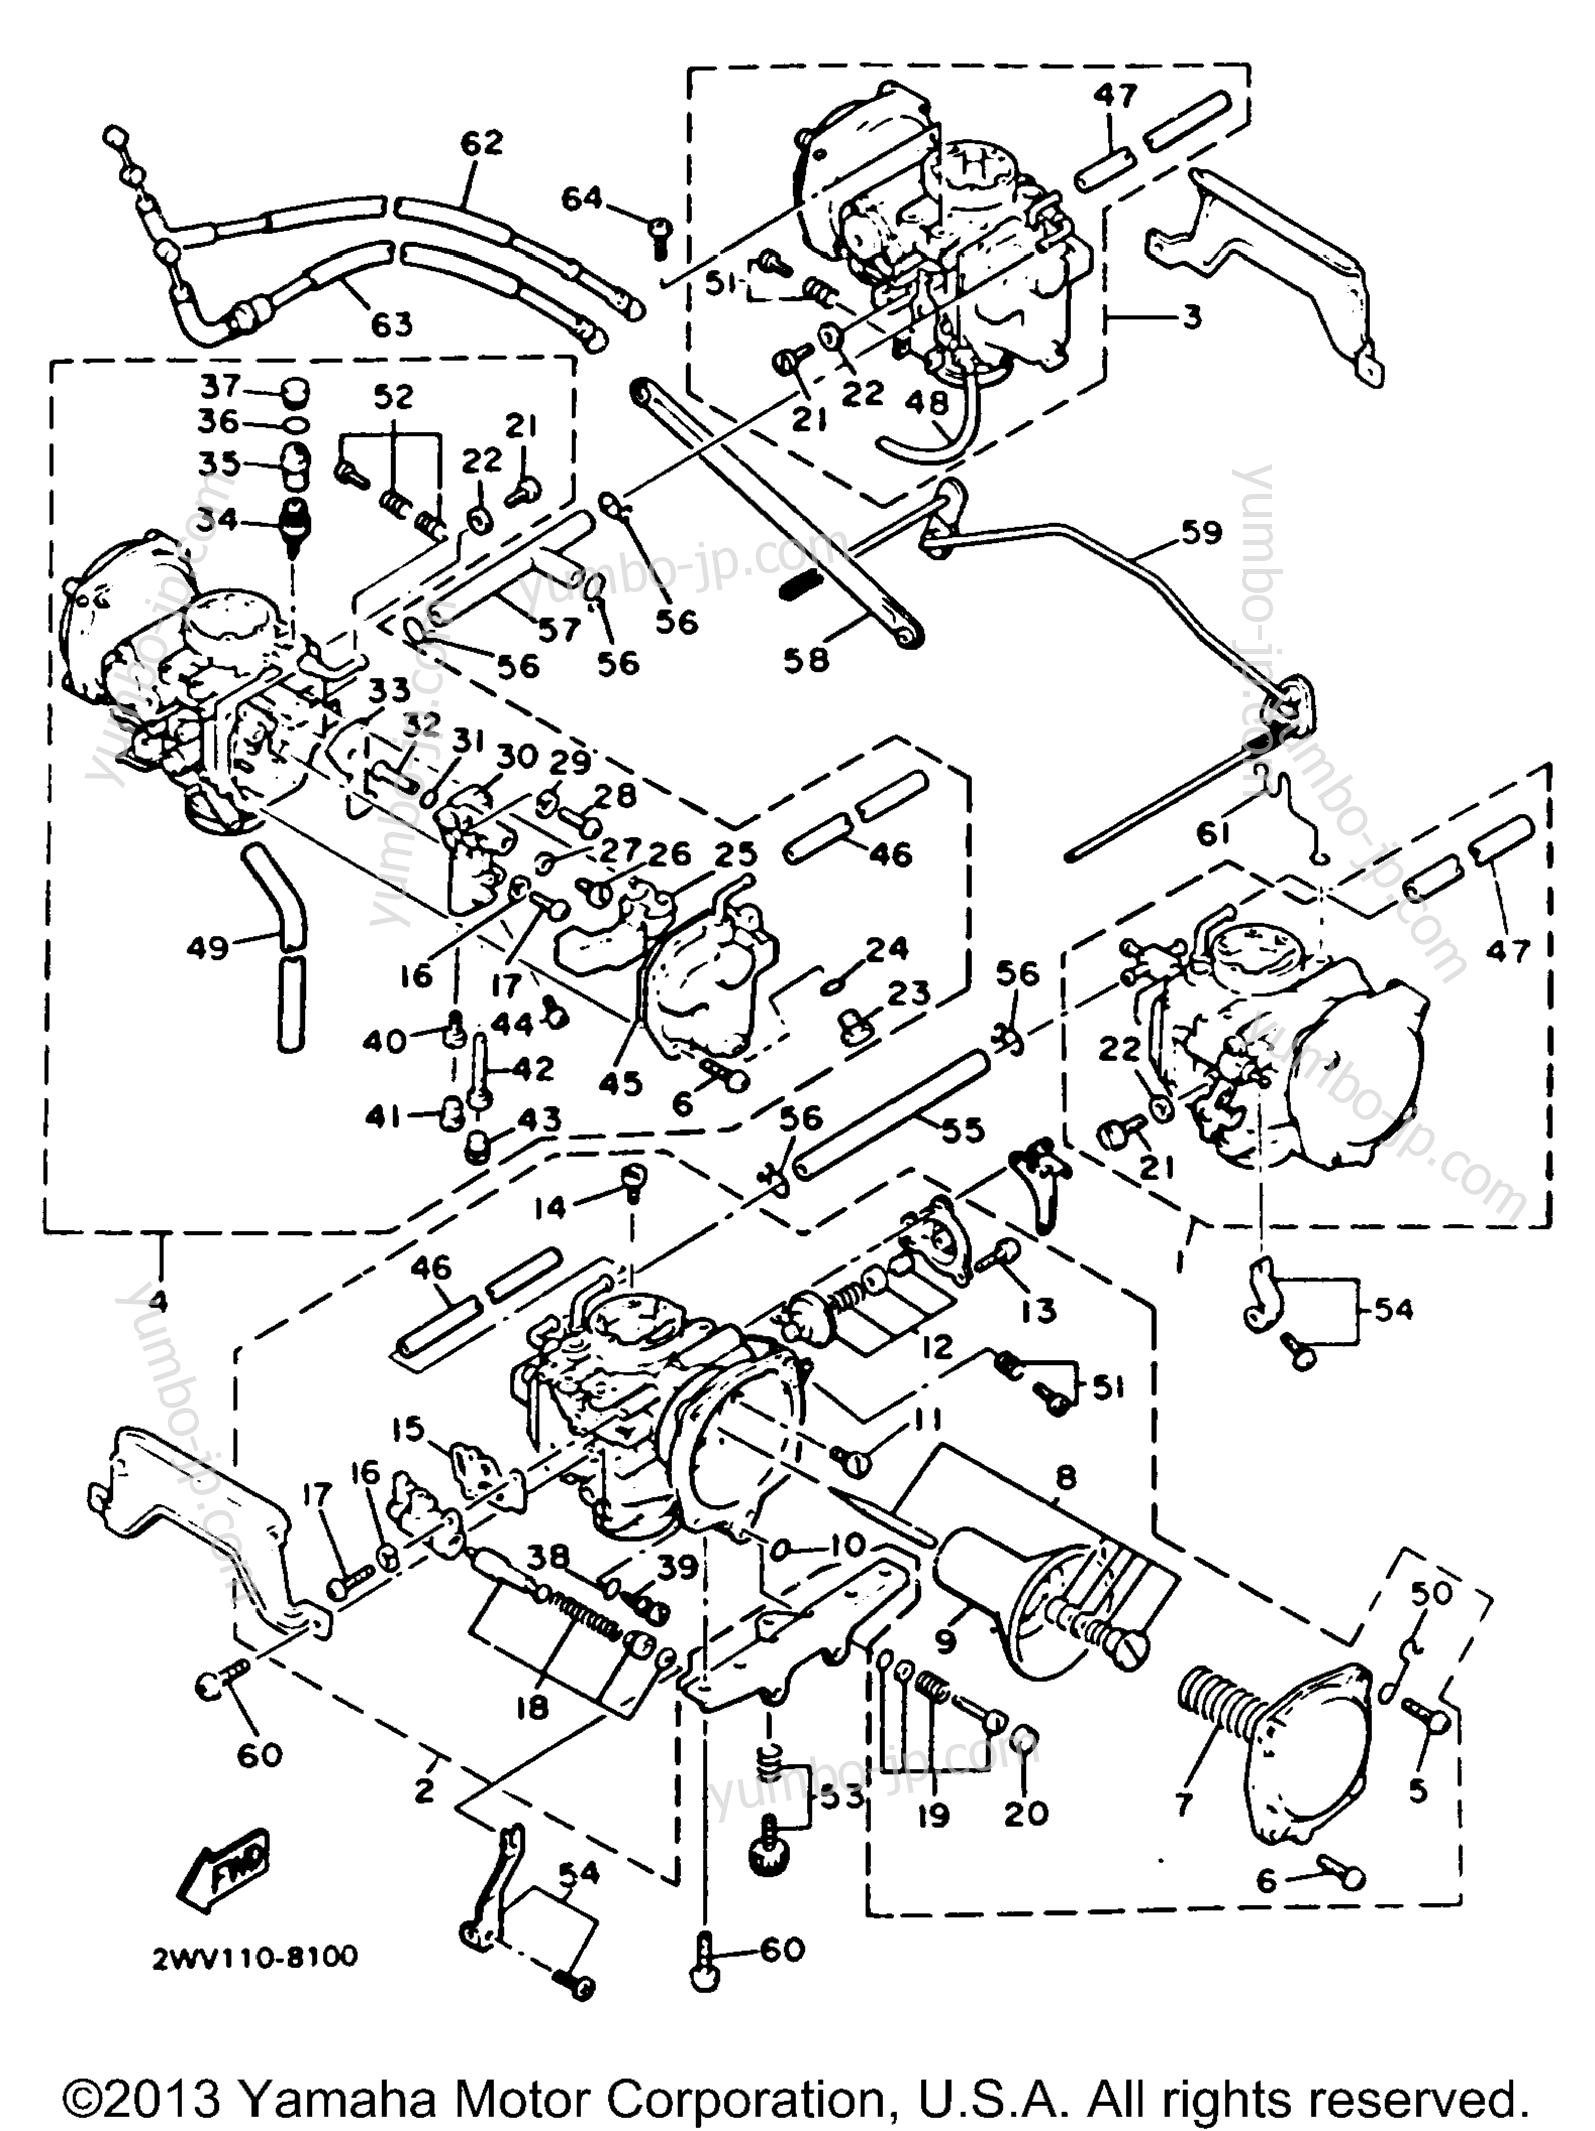 Carburetor Non California Model for motorcycles YAMAHA XVZ13DBC CA 1991 year